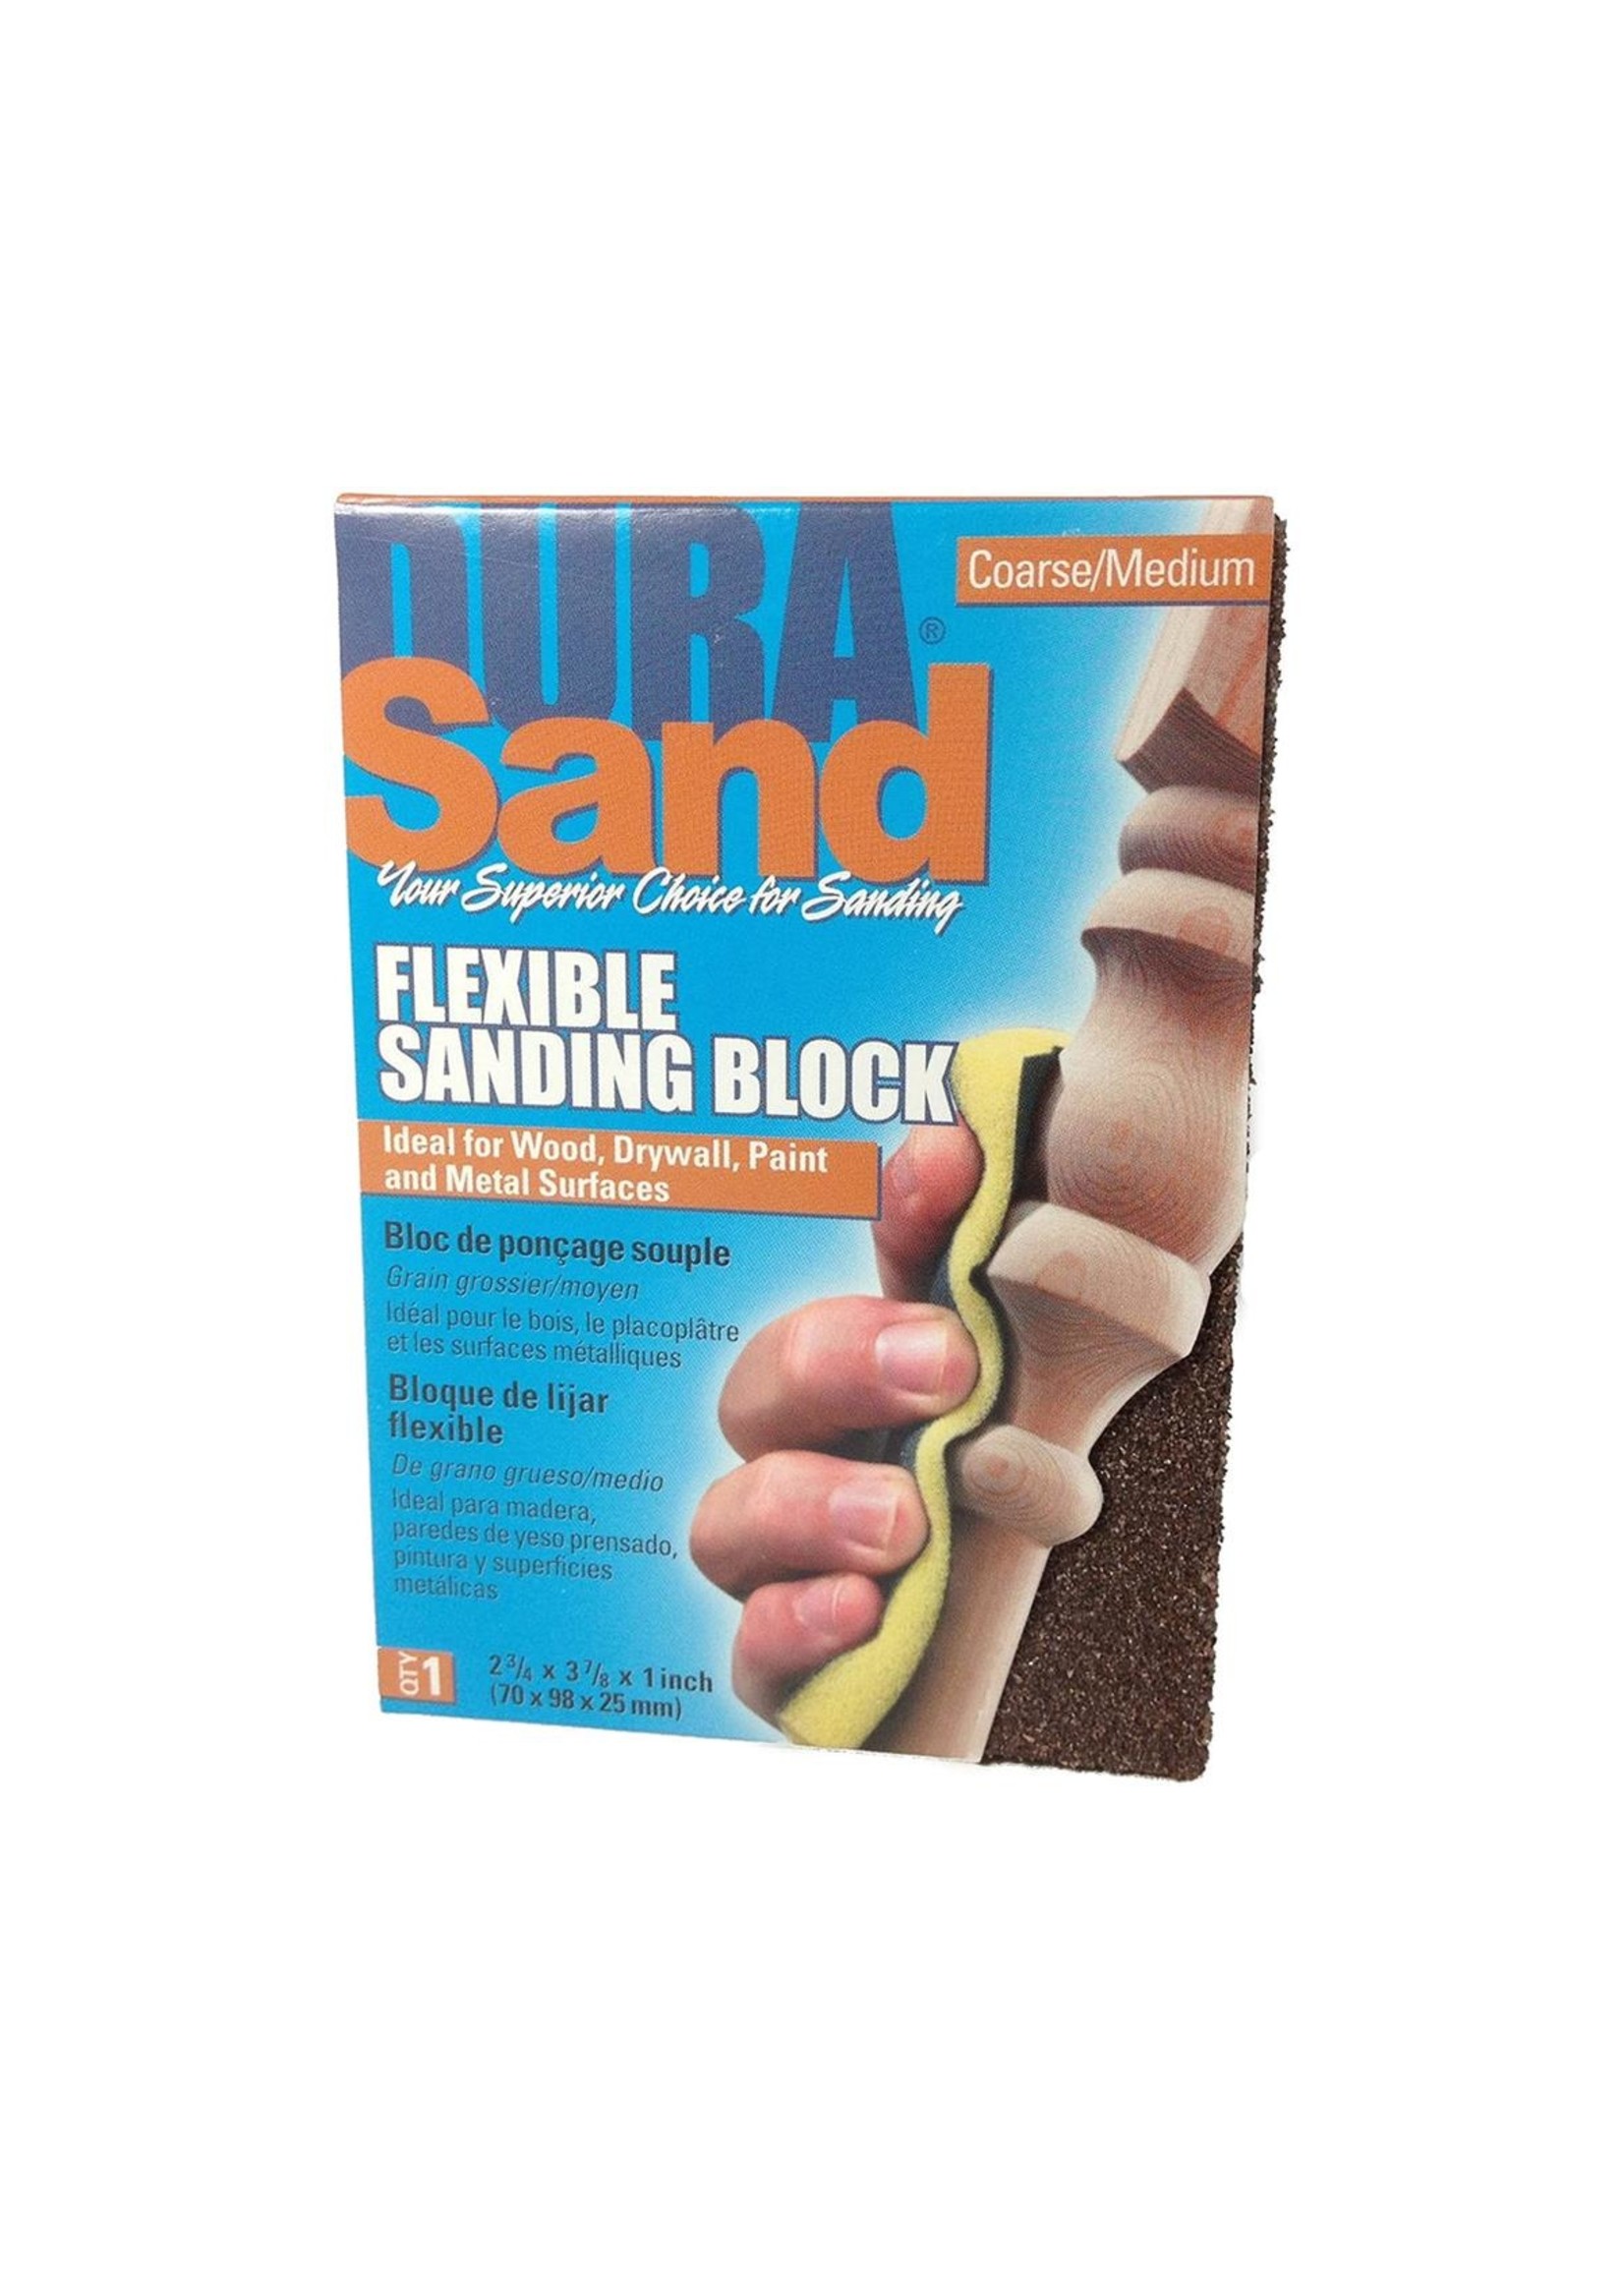 Mini Sanding Stick – Durasand